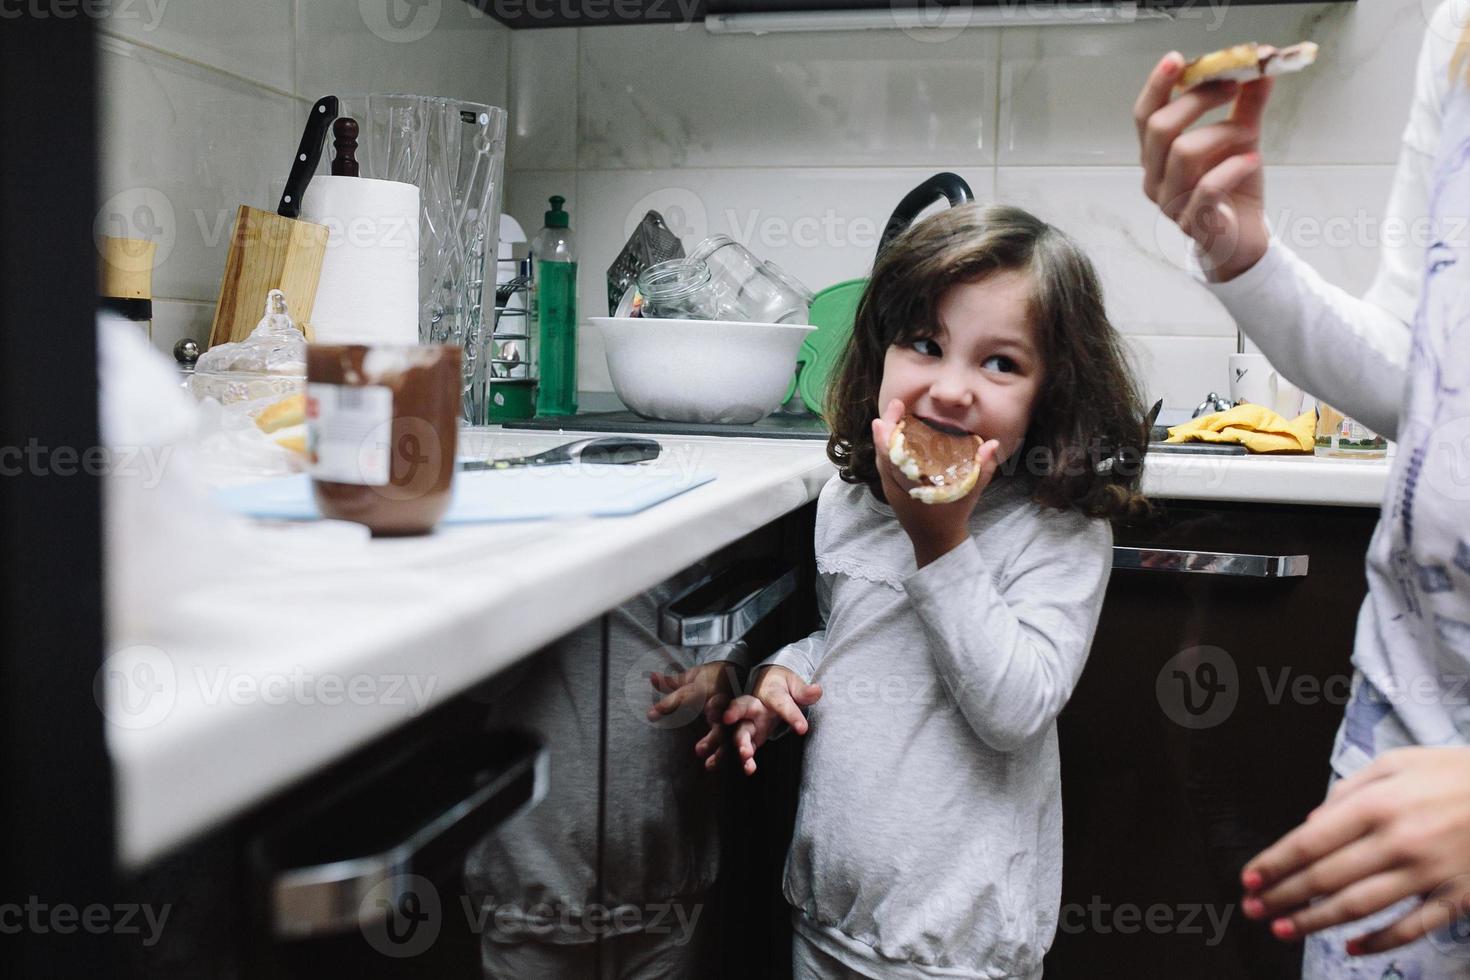 meisje in keuken foto